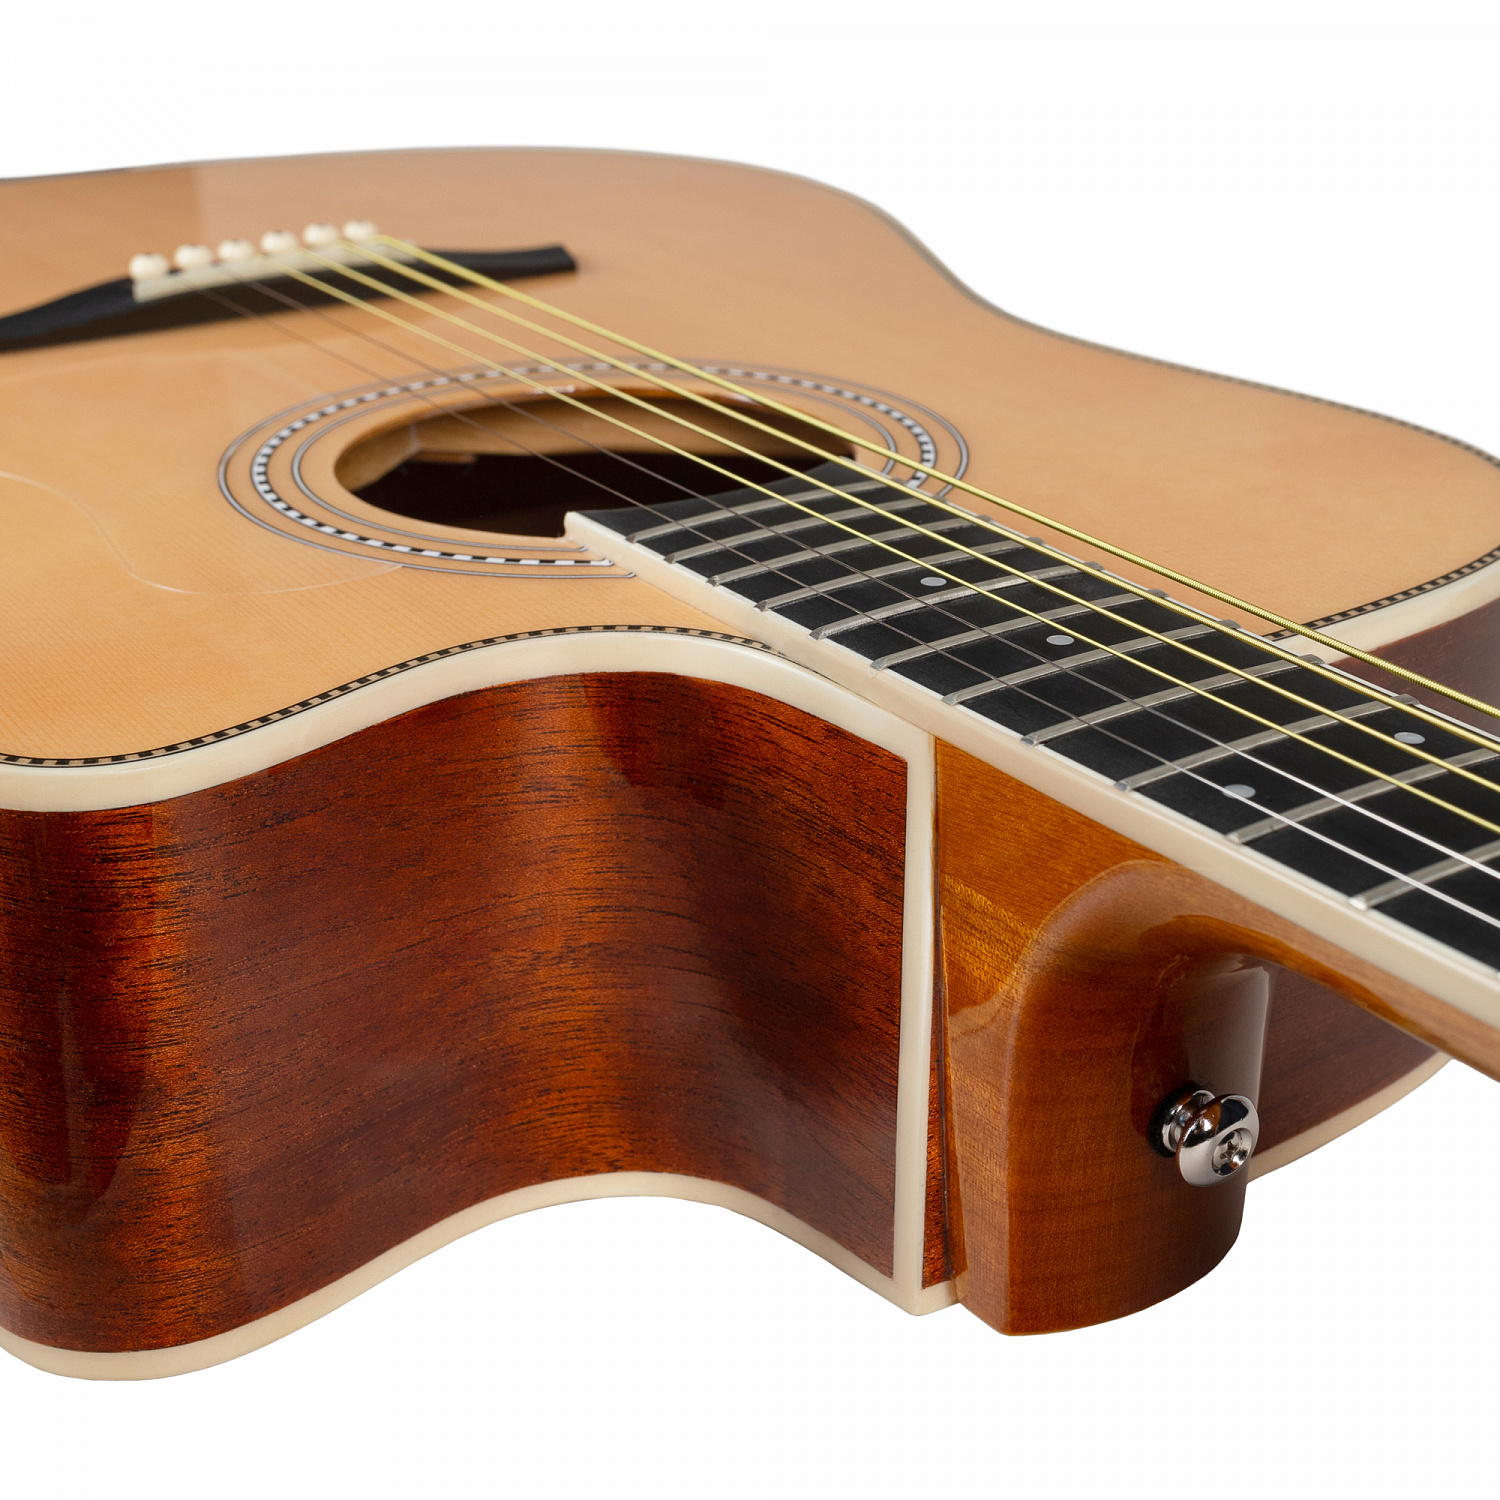 Rockdale Aurora D7 C Nat Gloss акустическая гитара дредноут с вырезом, цвет натуральный, глянцевое покрытие